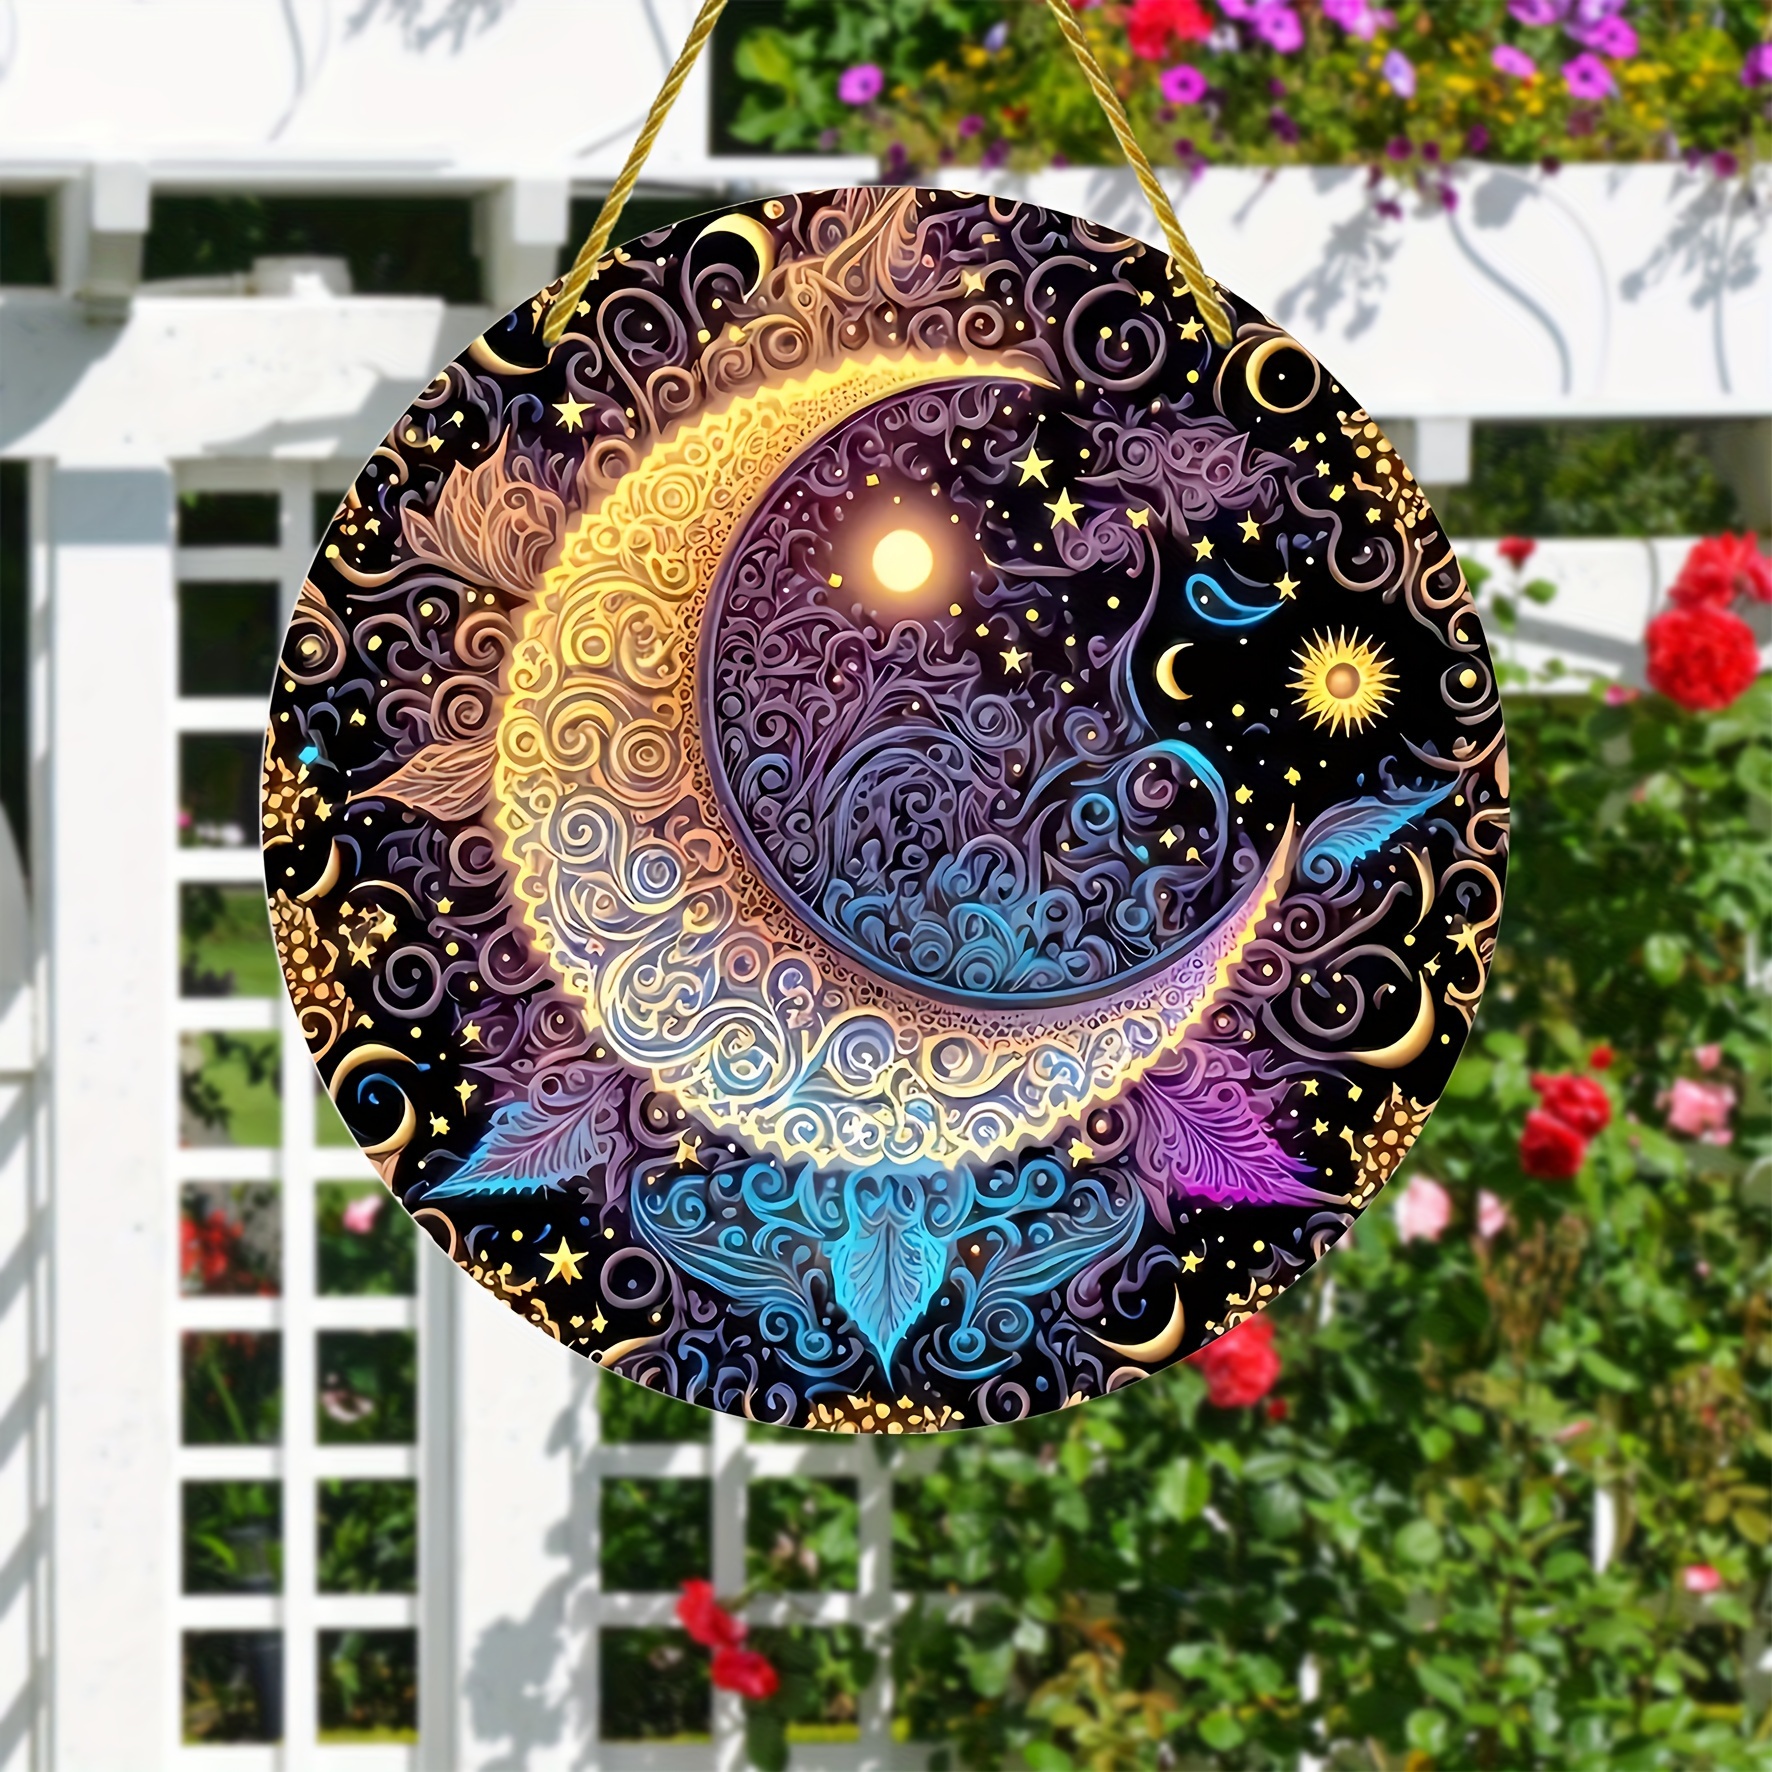 Décoration Murale Extérieure Le Soleil a Rendez-vous avec la Lune